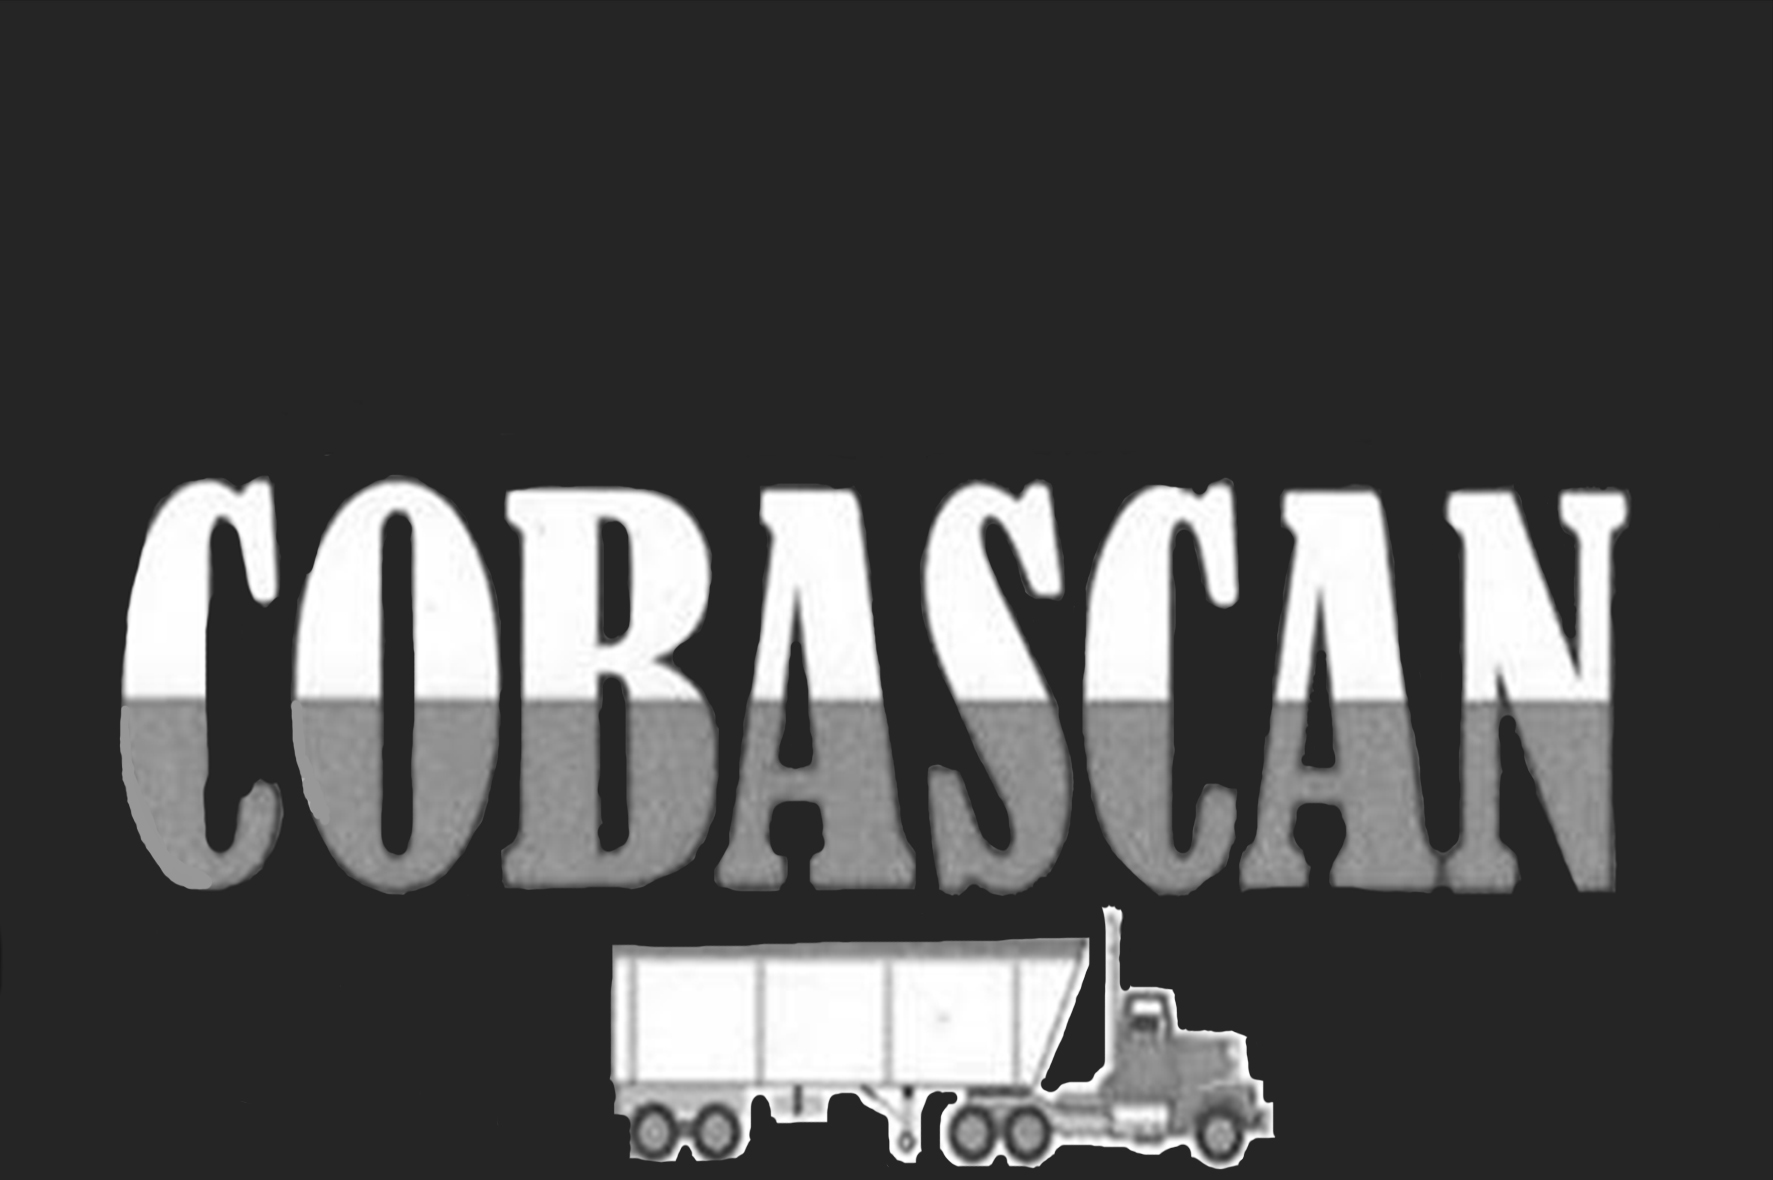 cobascan logo